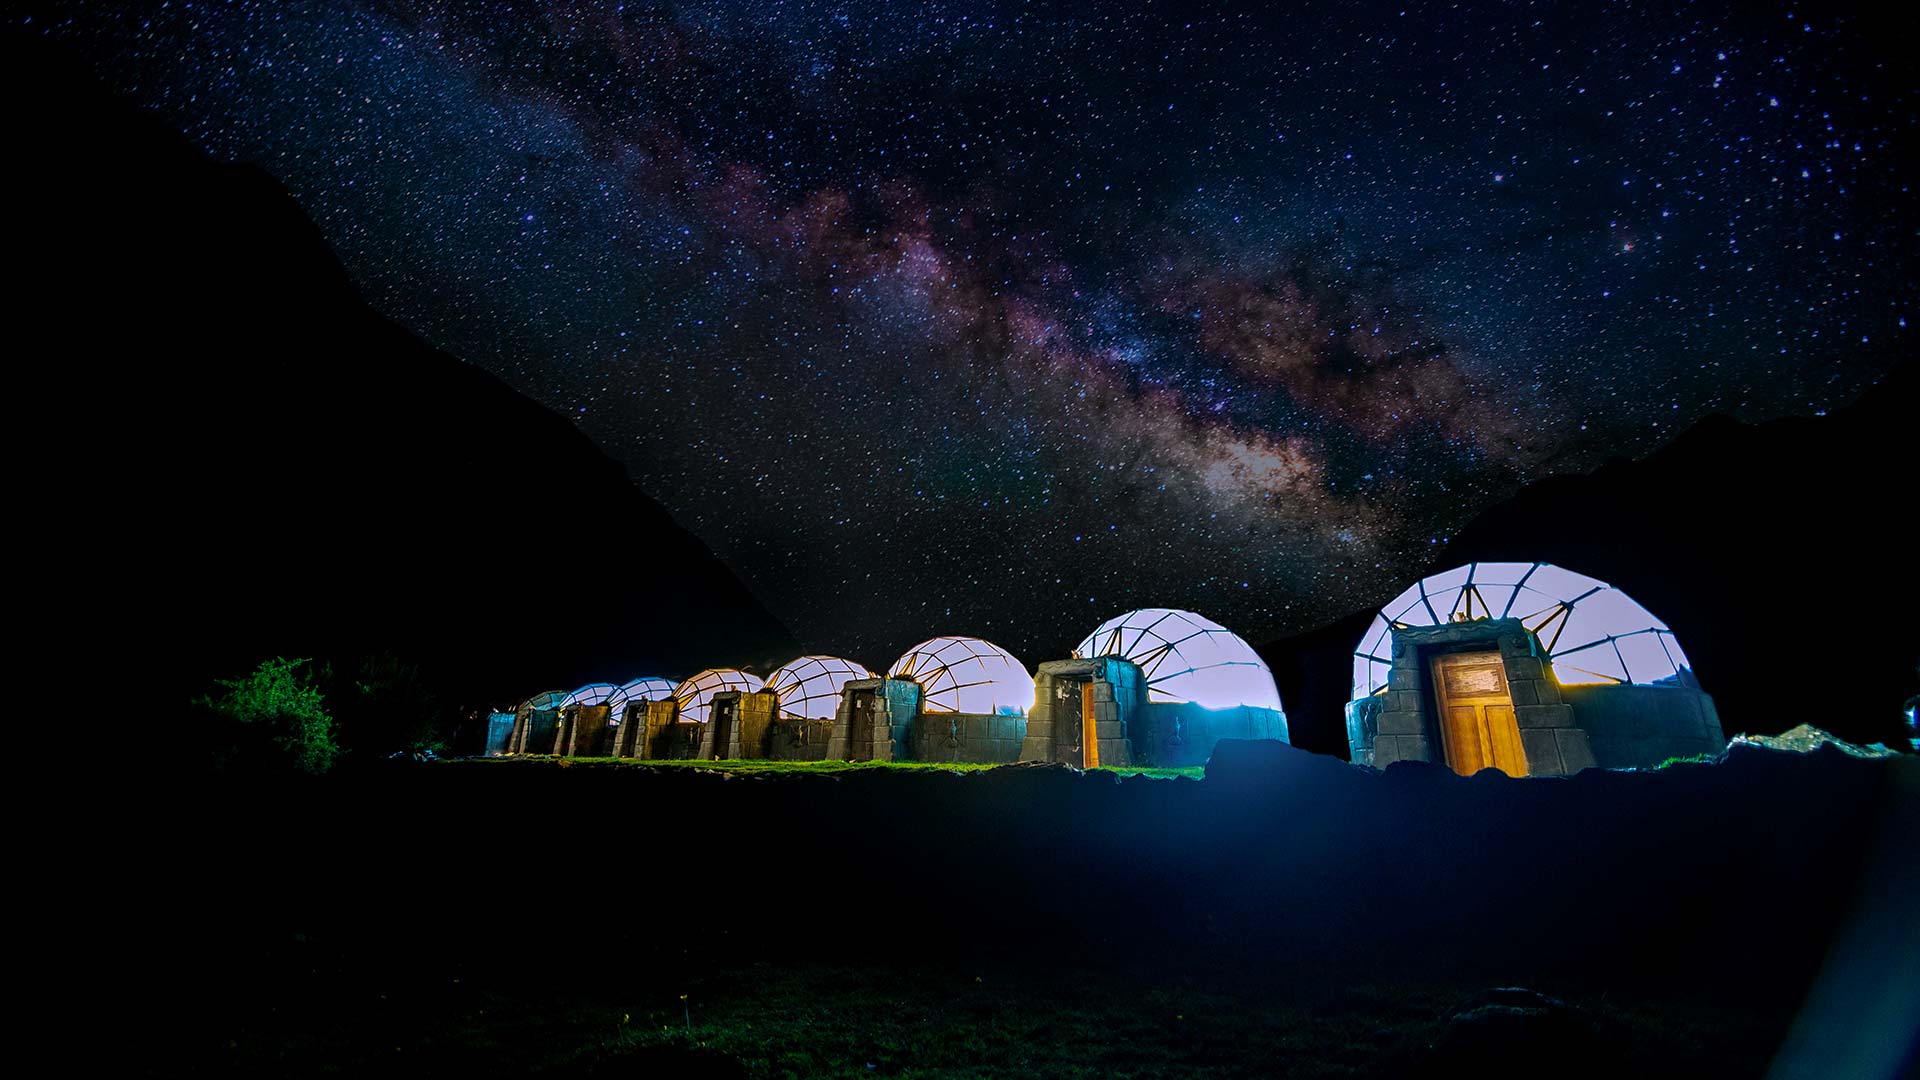 Vista de nosso Sky Camp e do céu noturno repleto de estrelas em Soraypampa - Trilha Salkantay Machu Picchu